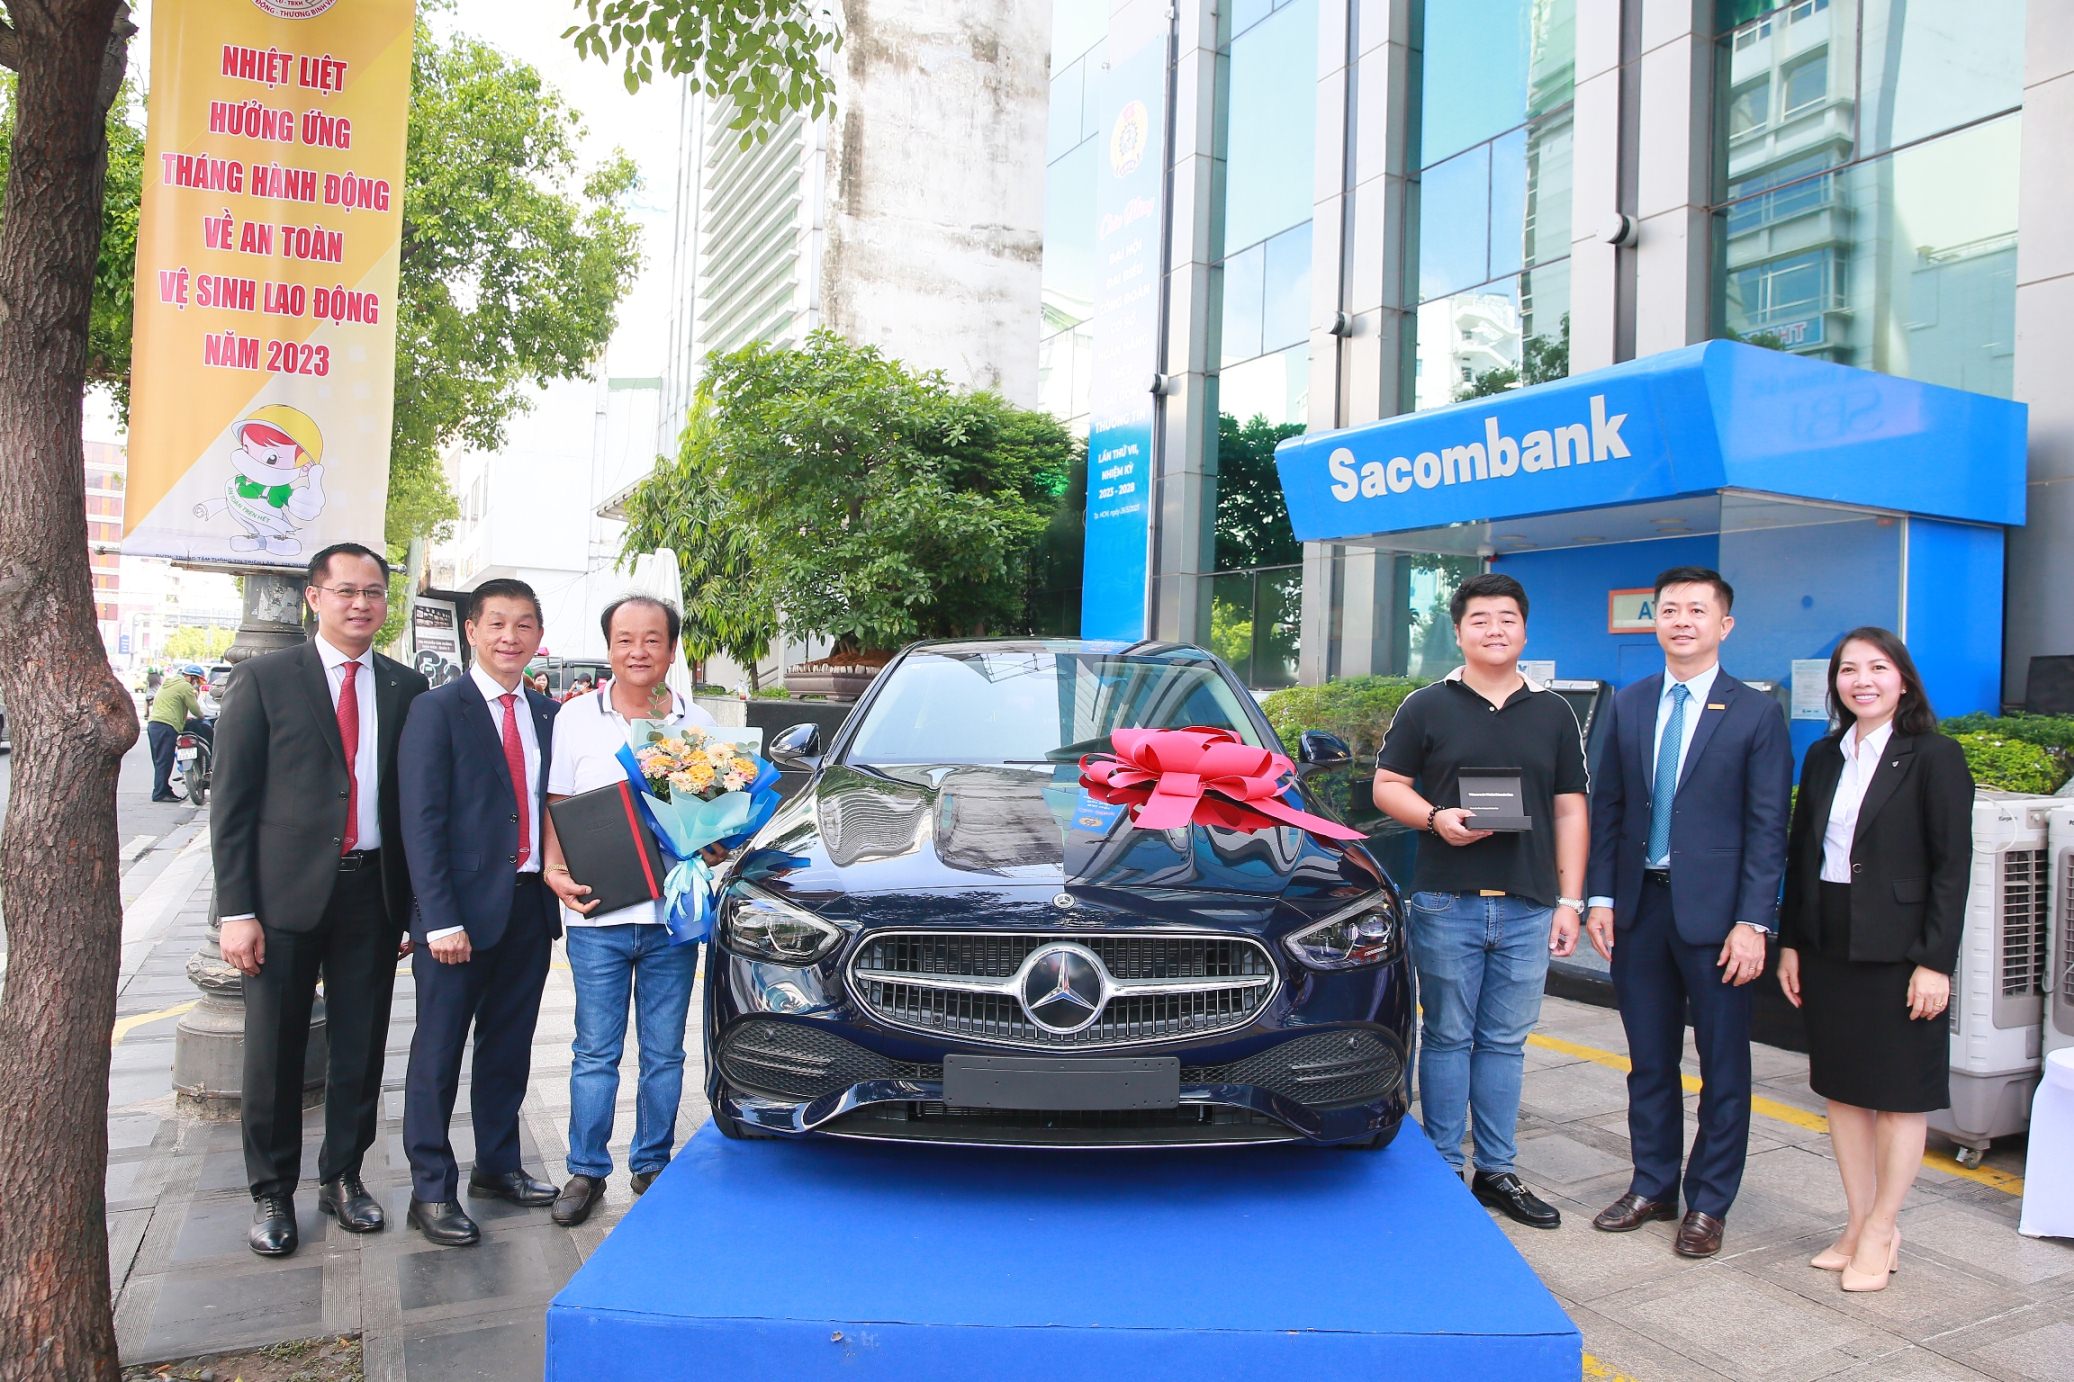 Trao thưởng xe Mercedes cho Khách hàng tham gia bảo hiểm với Dai-ichi Life Việt Nam tại Sacombank